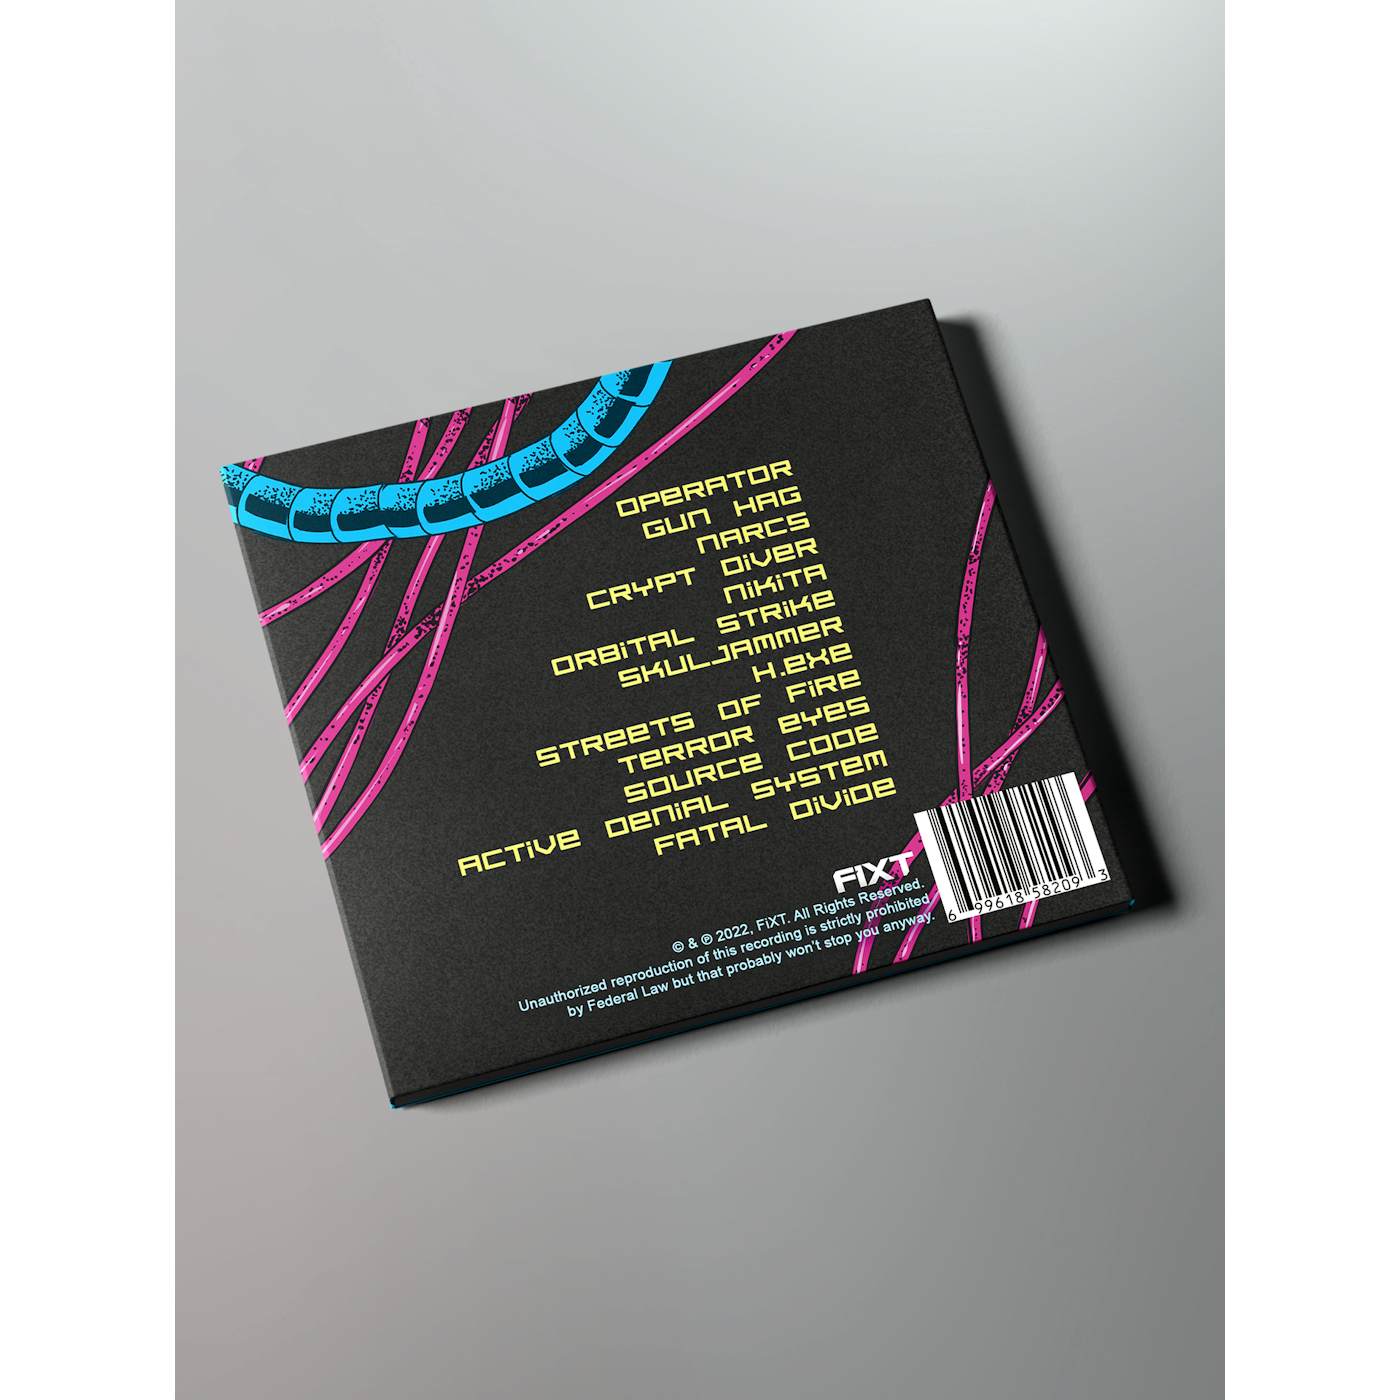 Mega Drive - 199XAD CD